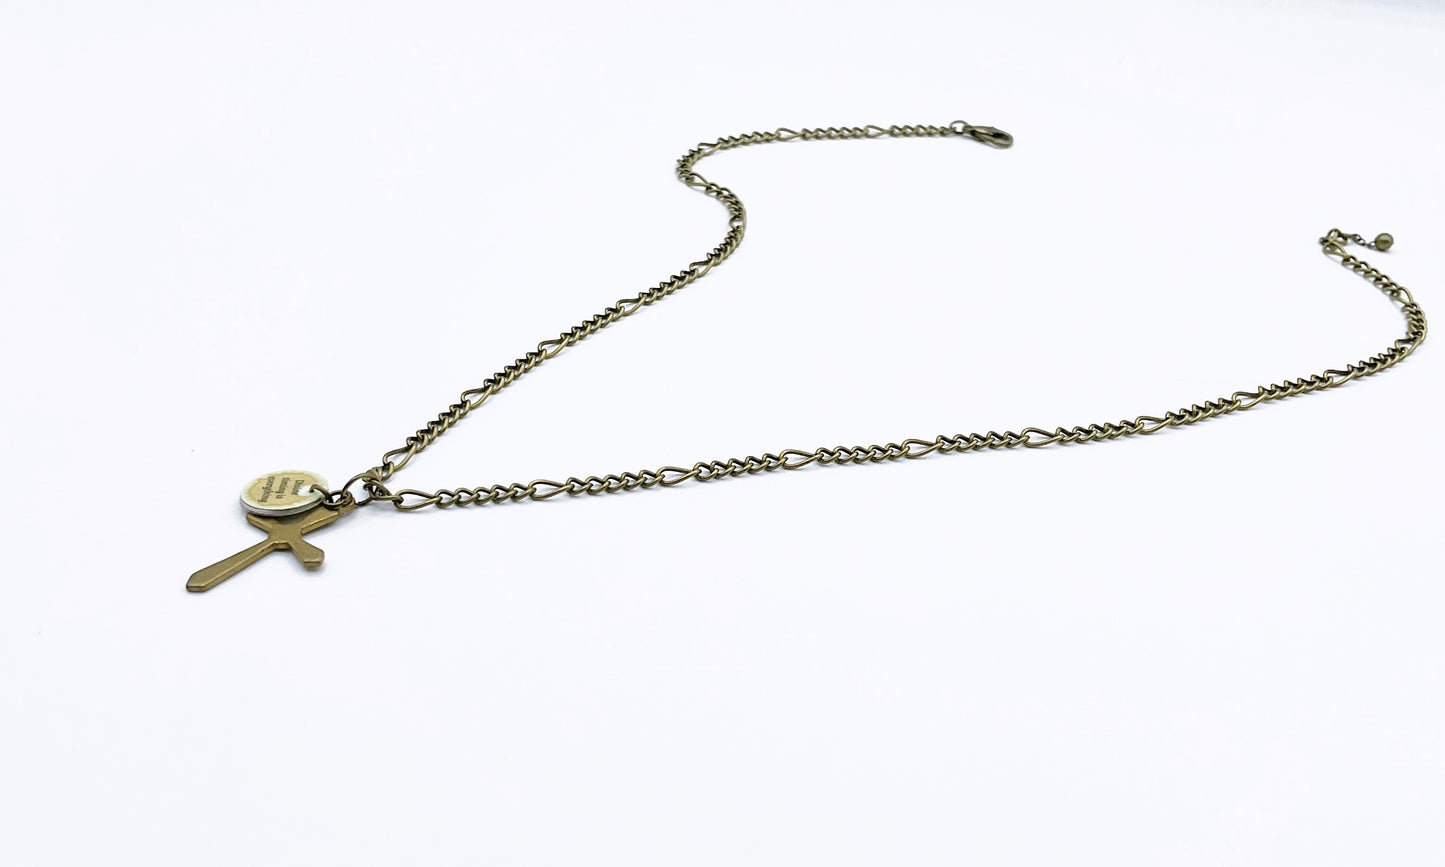 'Divinity' Necklace - Antique Bronze